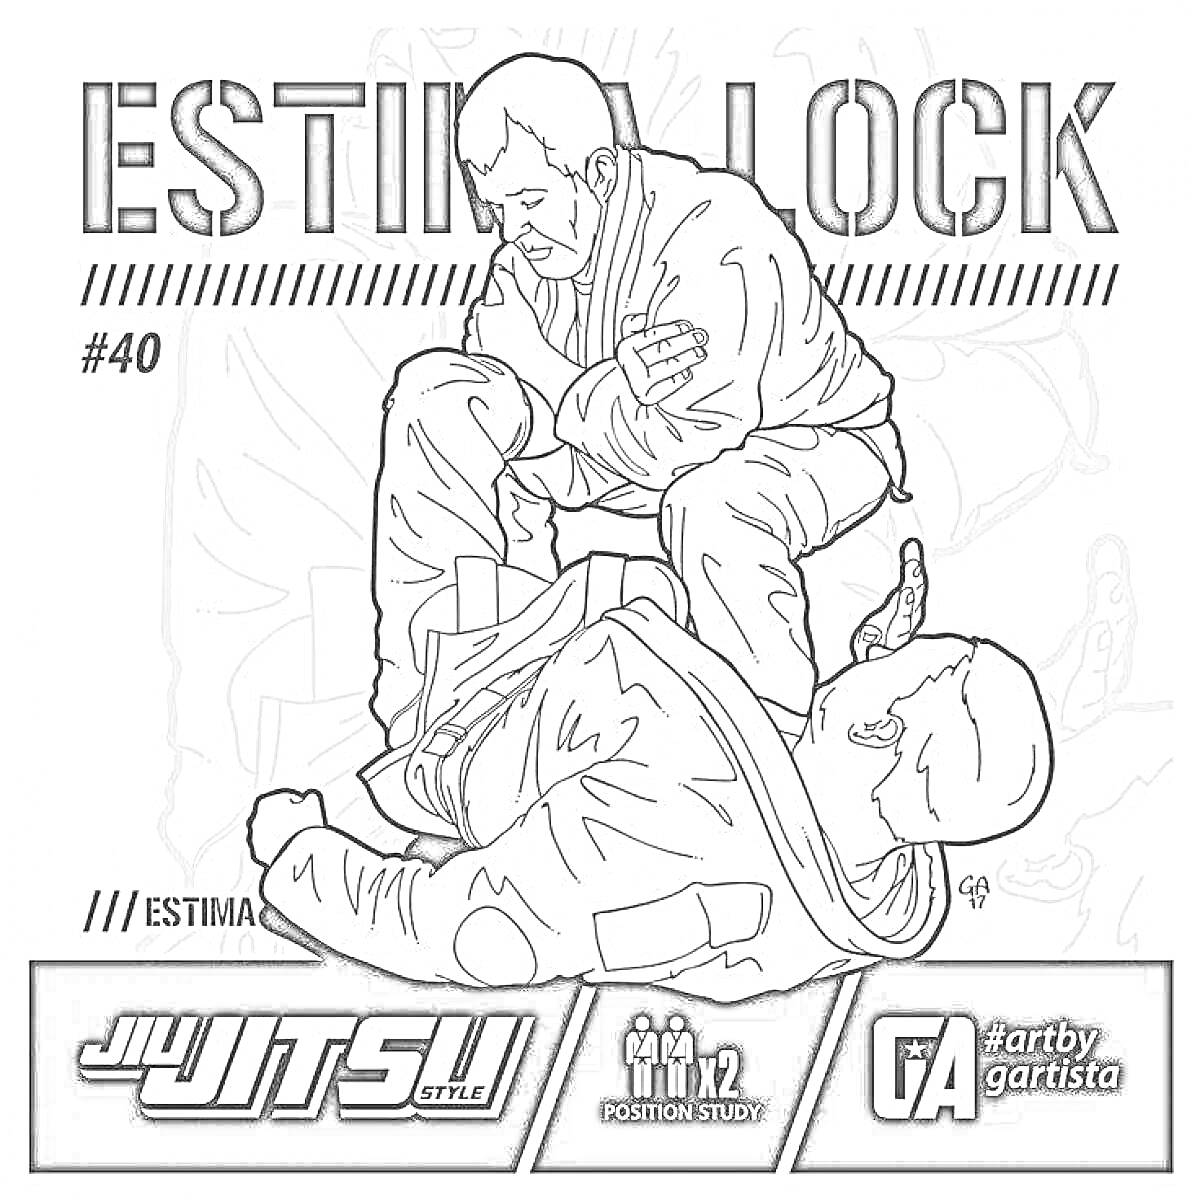 Раскраска Эстима лок, два борца в кимоно, один из которых применяет болевой прием на ногу, стилизованное название, номер 40, хэштеги, логотипы и названия Jiu Jitsu Style, Position Study, арт от gartistico